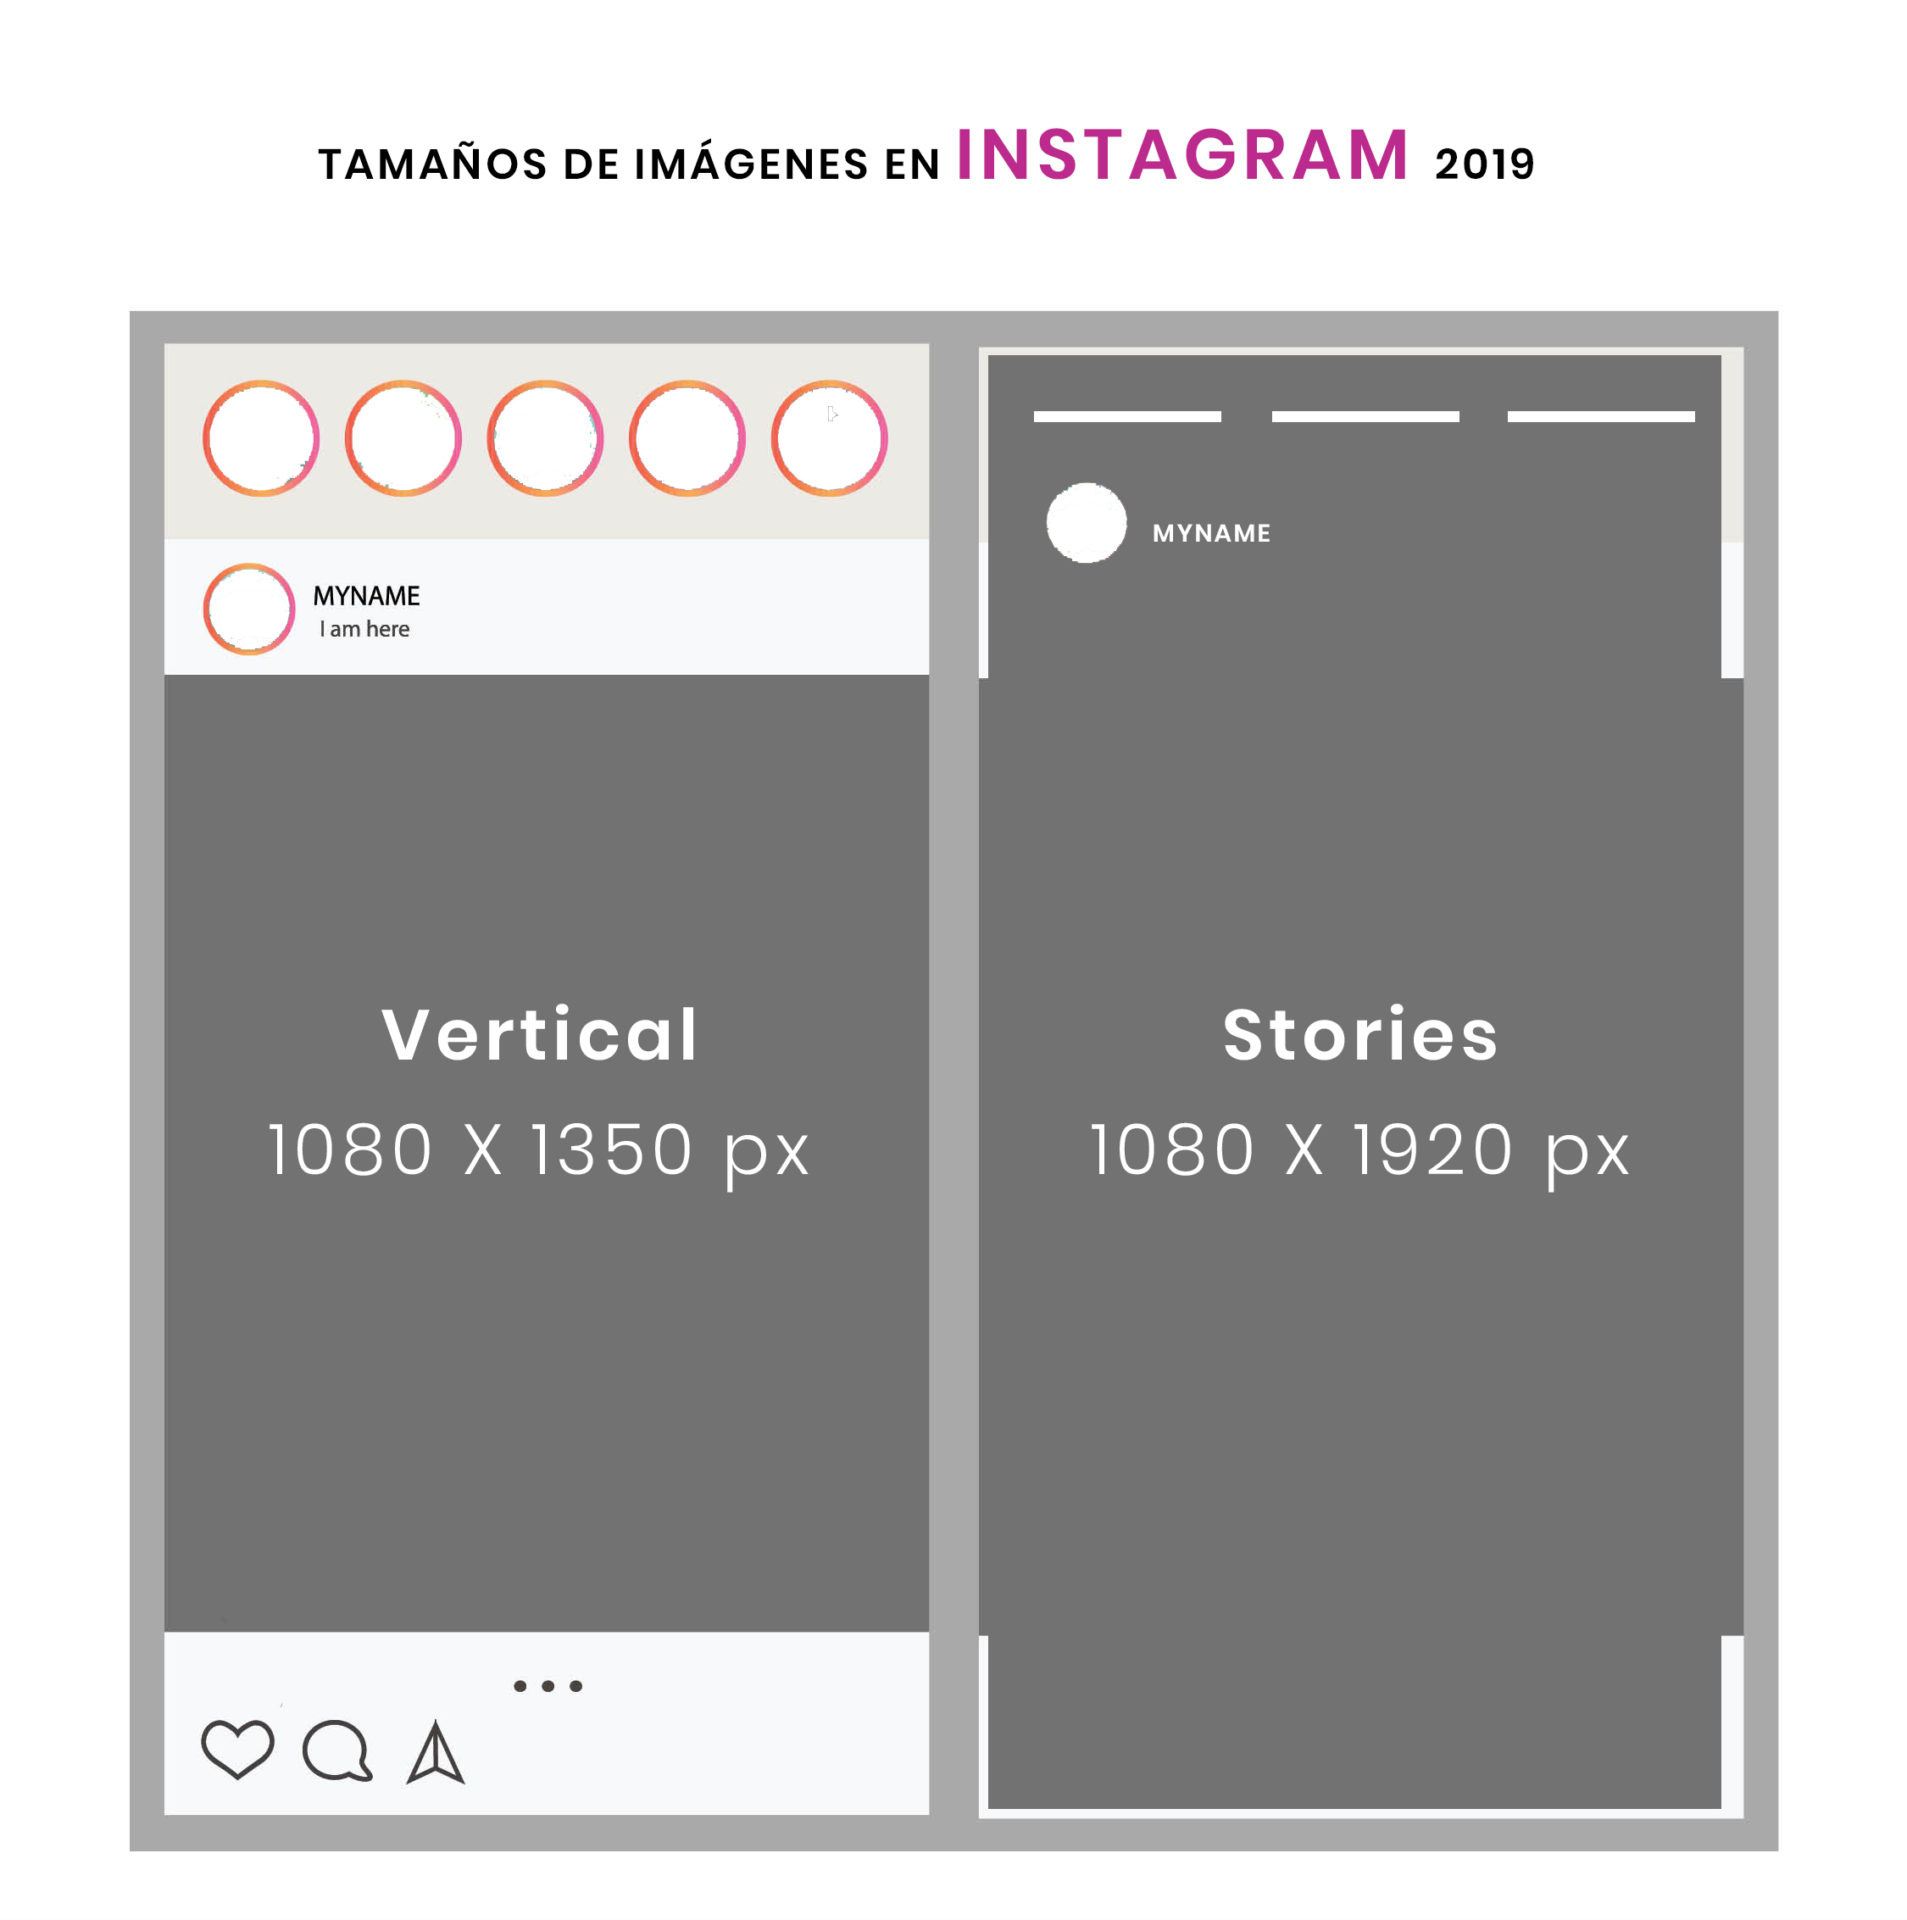 Tamaño de imagenes en Instagram 2019